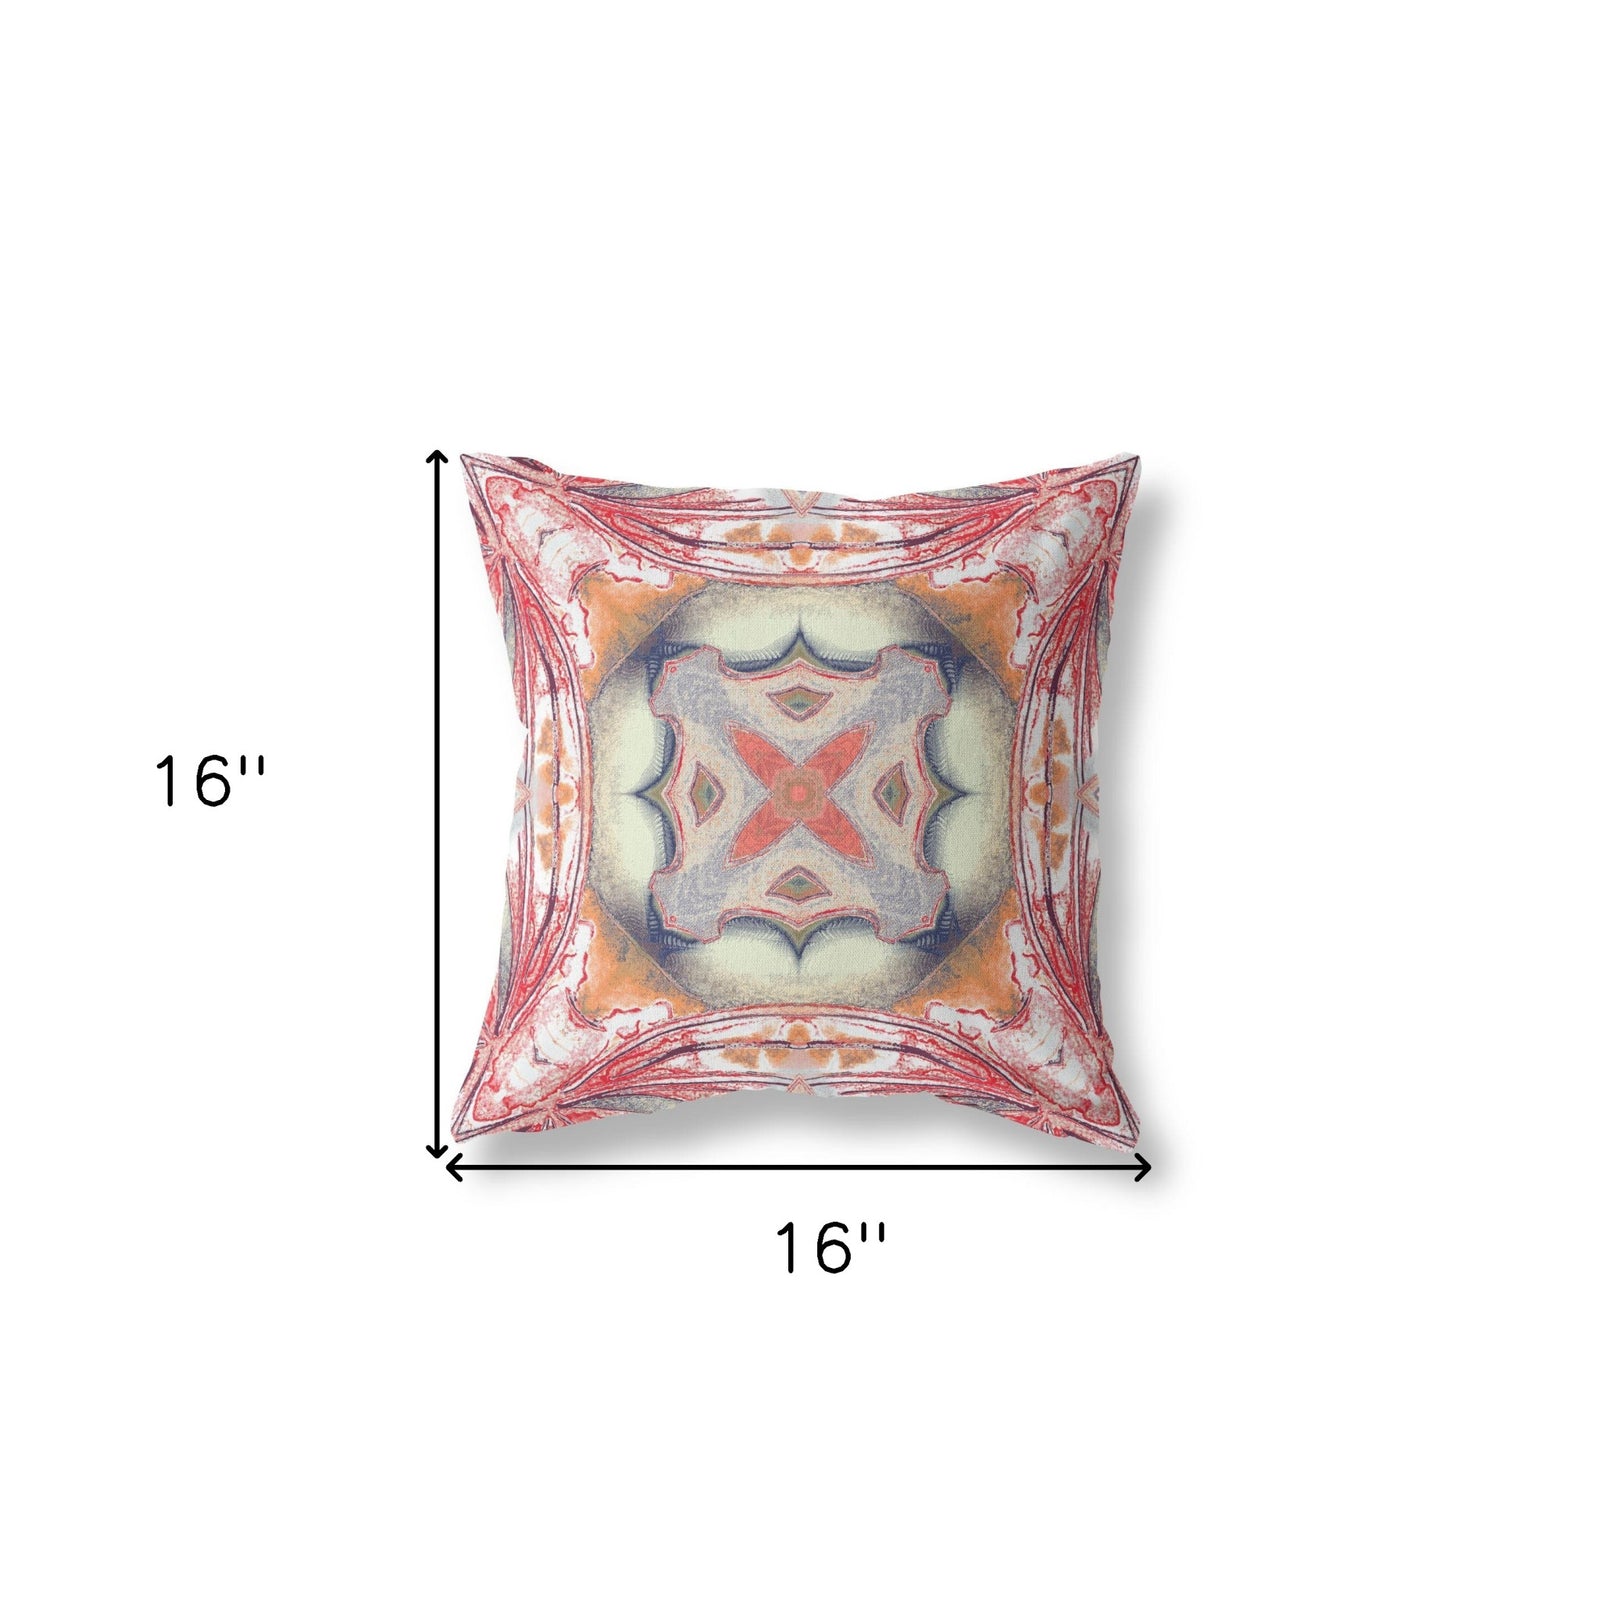 16" X 16" Rustic Orange Zippered Geometric Indoor Outdoor Throw Pillow